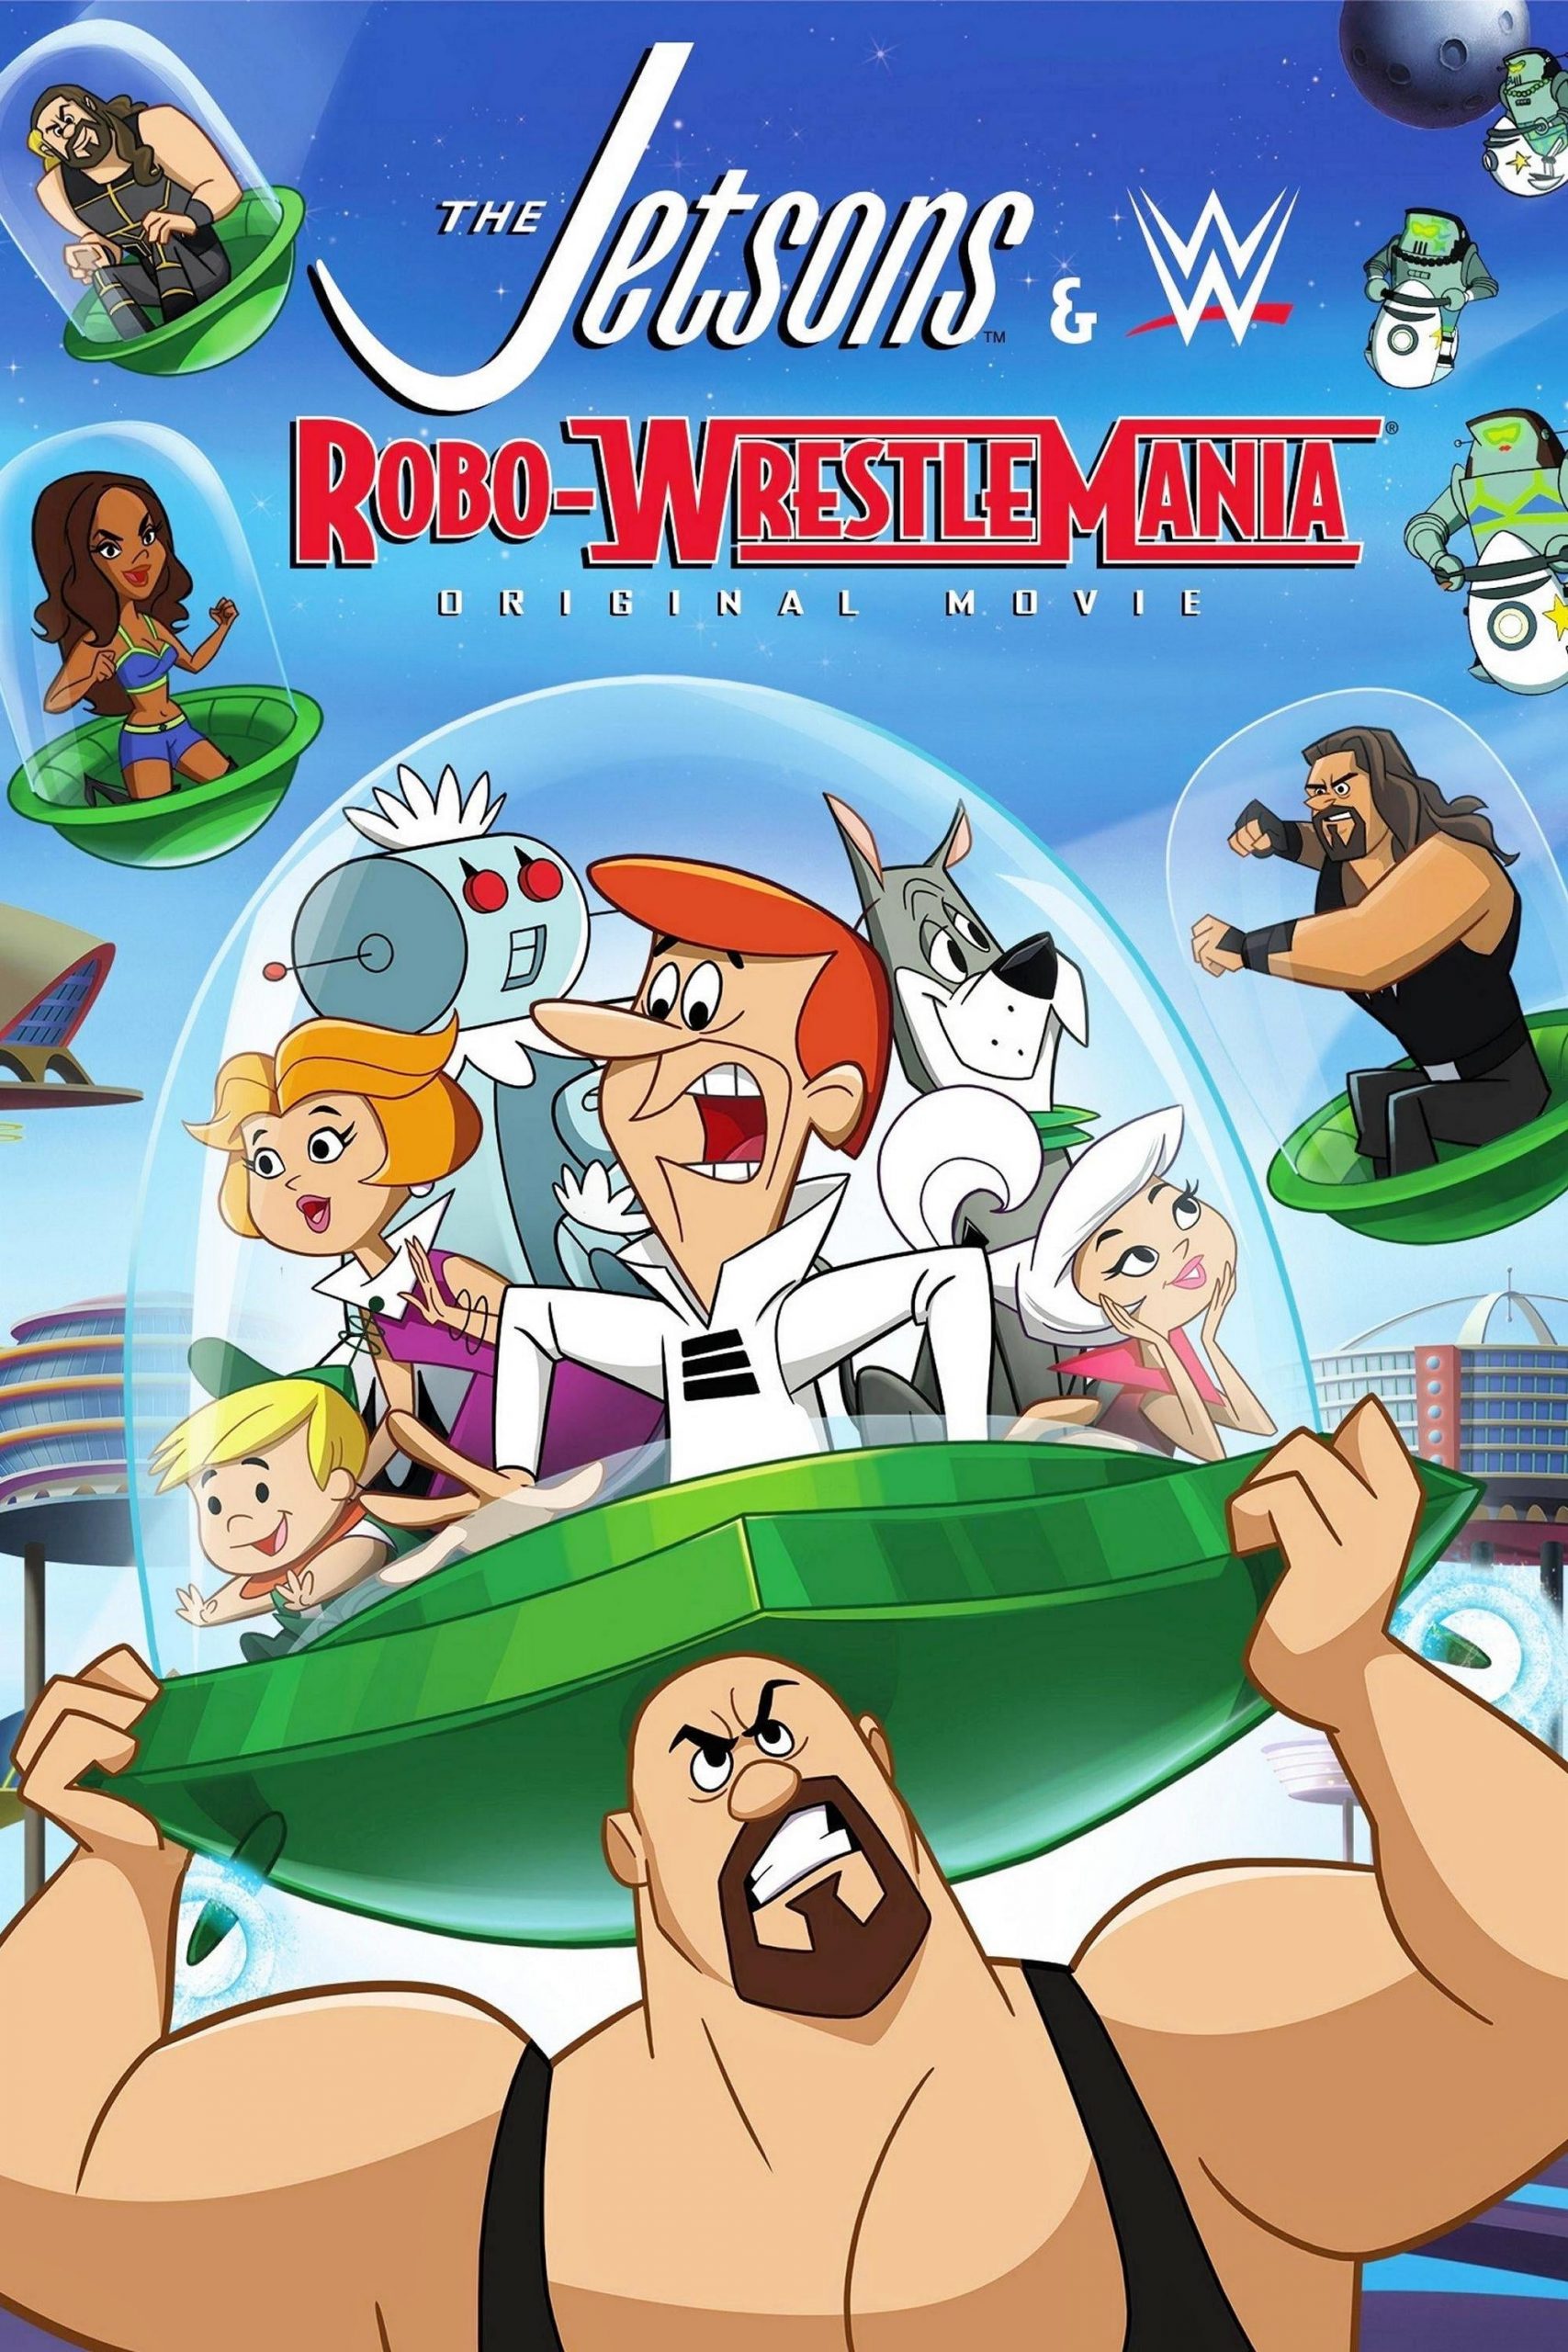 دانلود انیمیشن The Jetsons and WWE: Robo-WrestleMania 2017 با دوبله فارسی